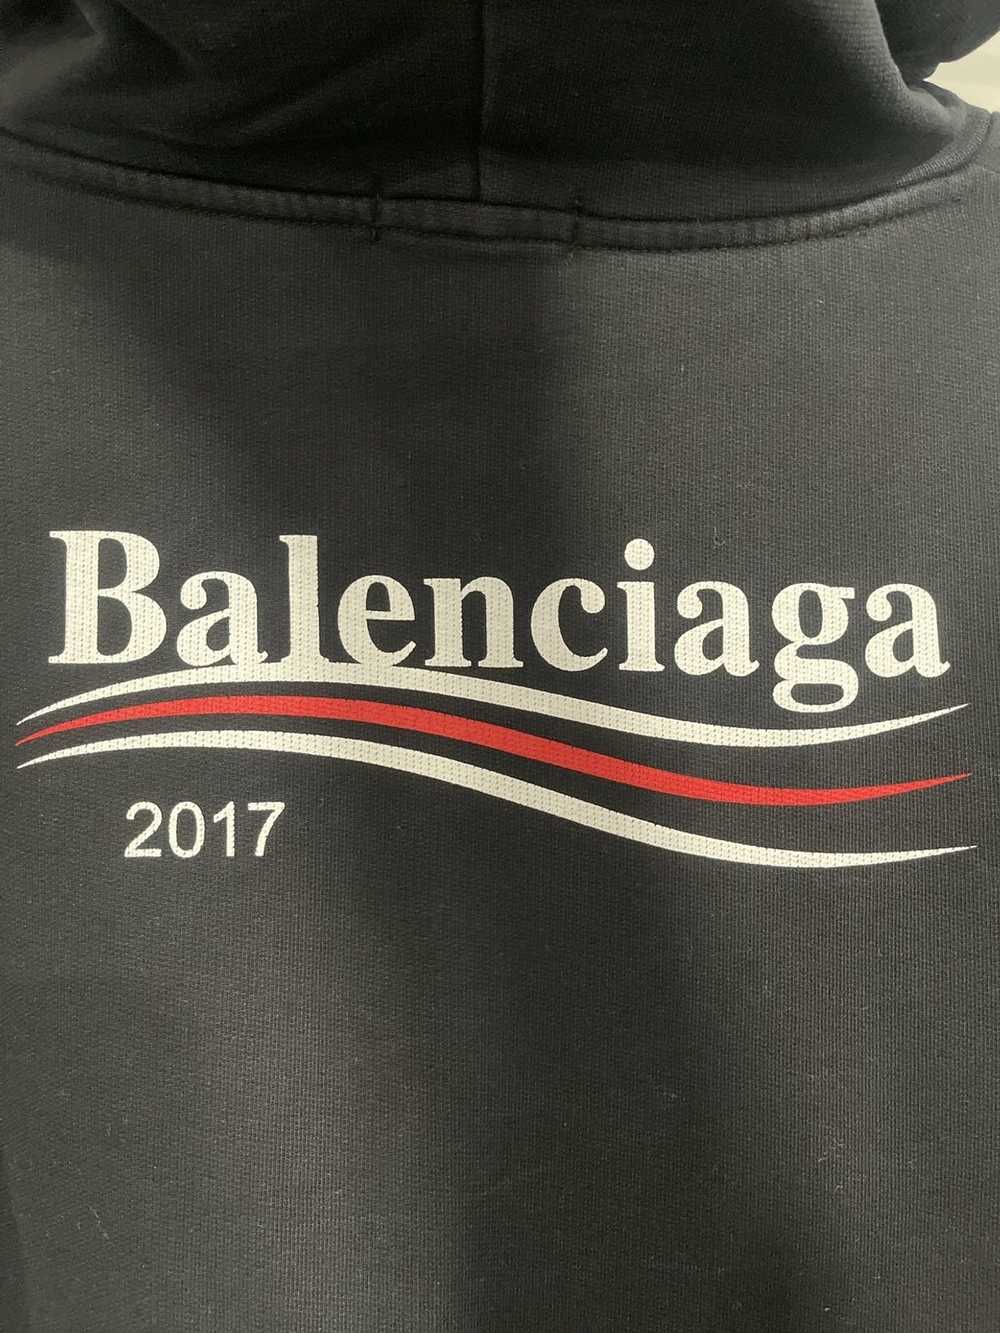 Balenciaga Balenciaga Campaign hoodie 2017 - image 4